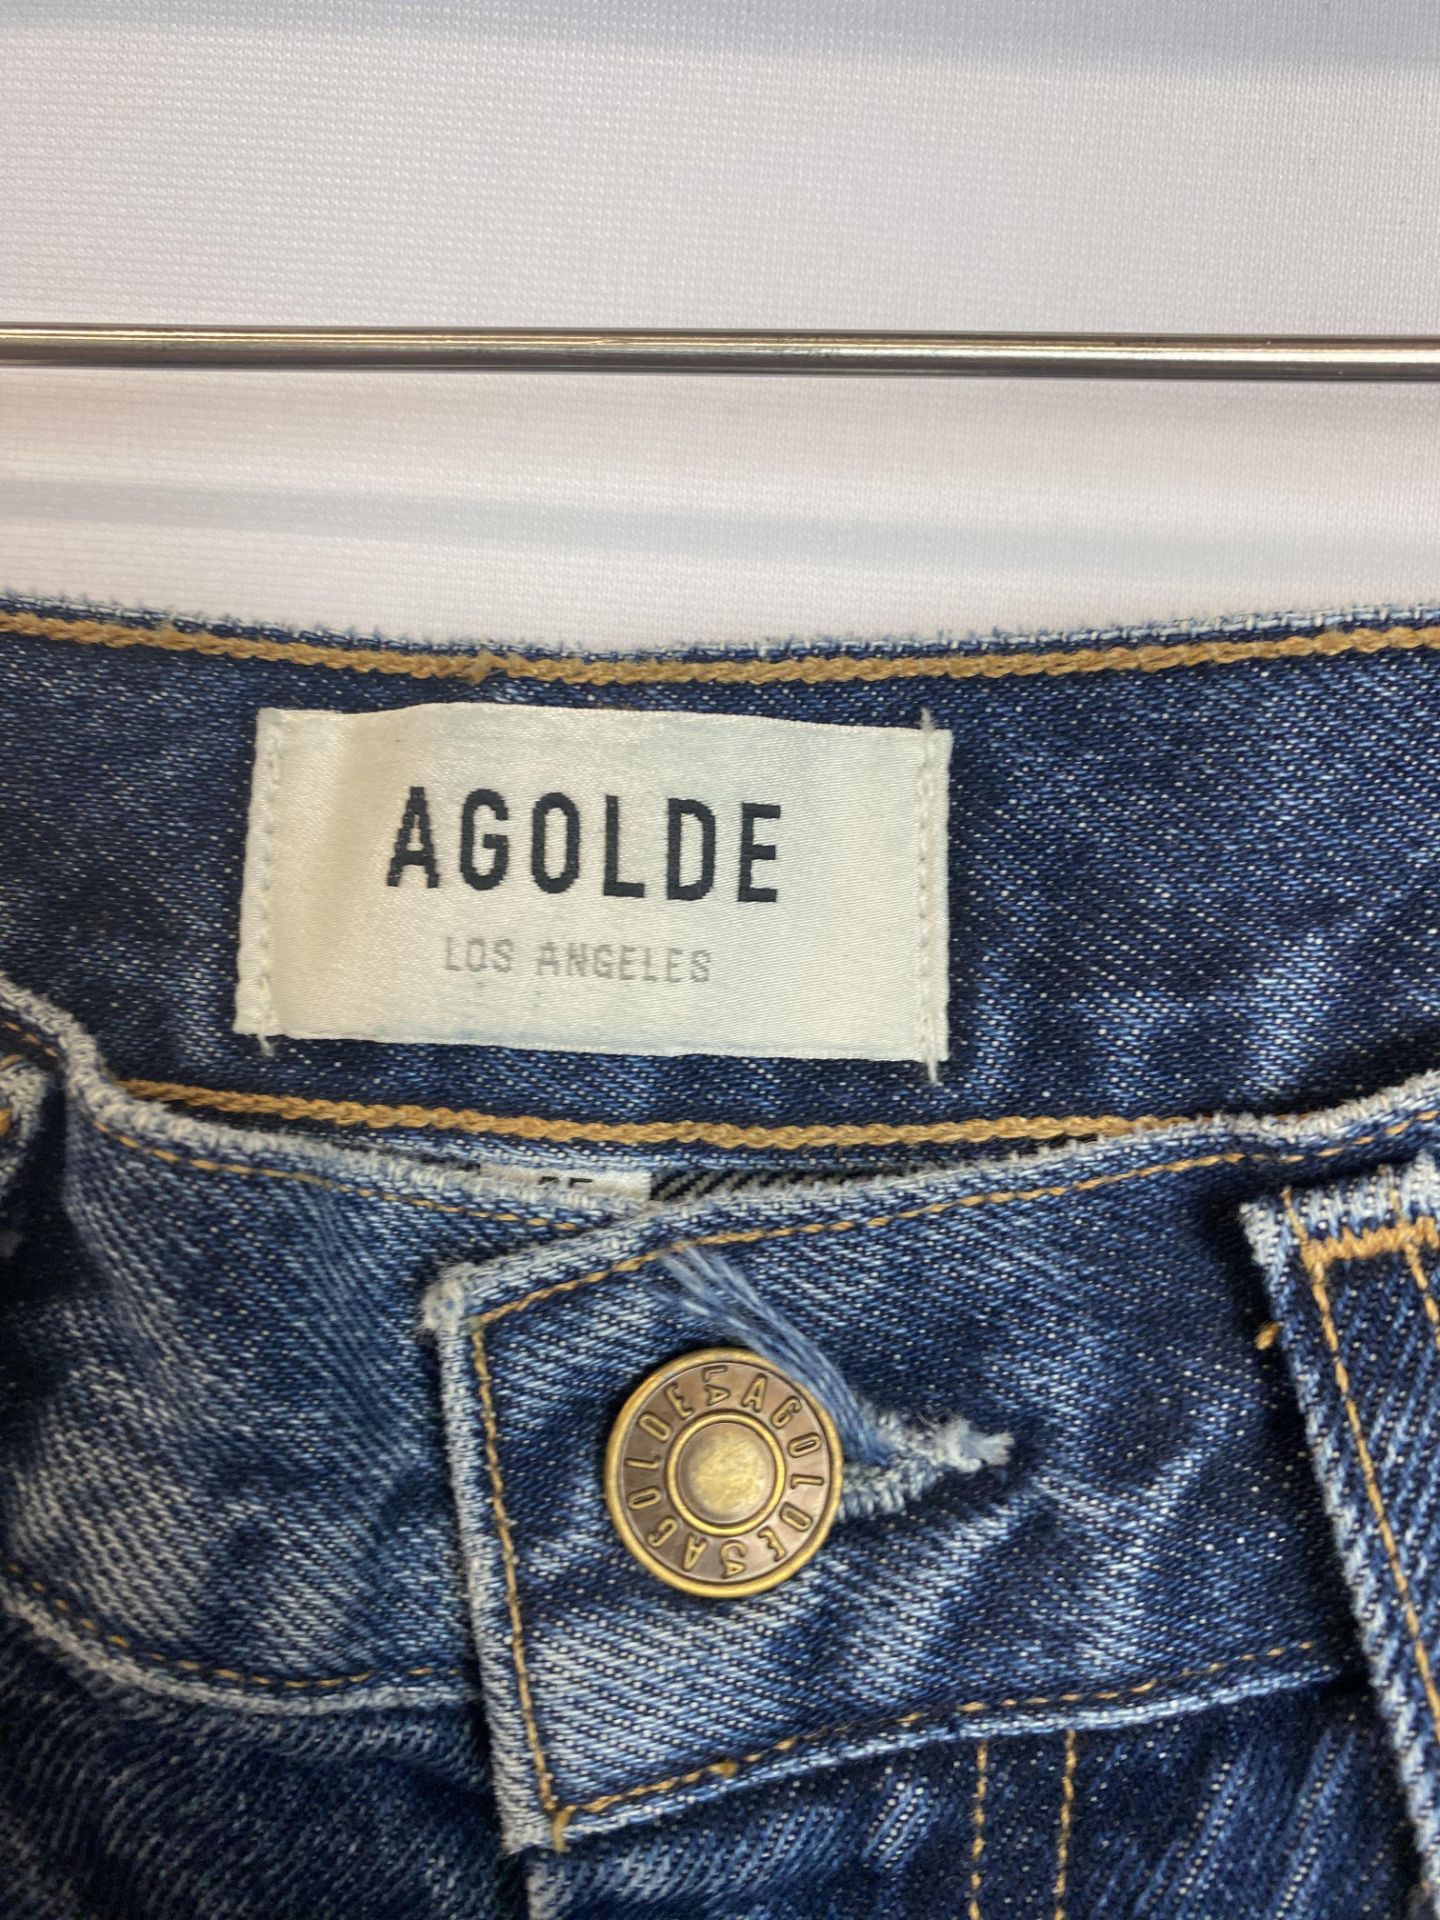 Agolde Pinch Waist Denim High Rise Kick Jean, Size 25, Original Retail Price: $198 - Bild 4 aus 4